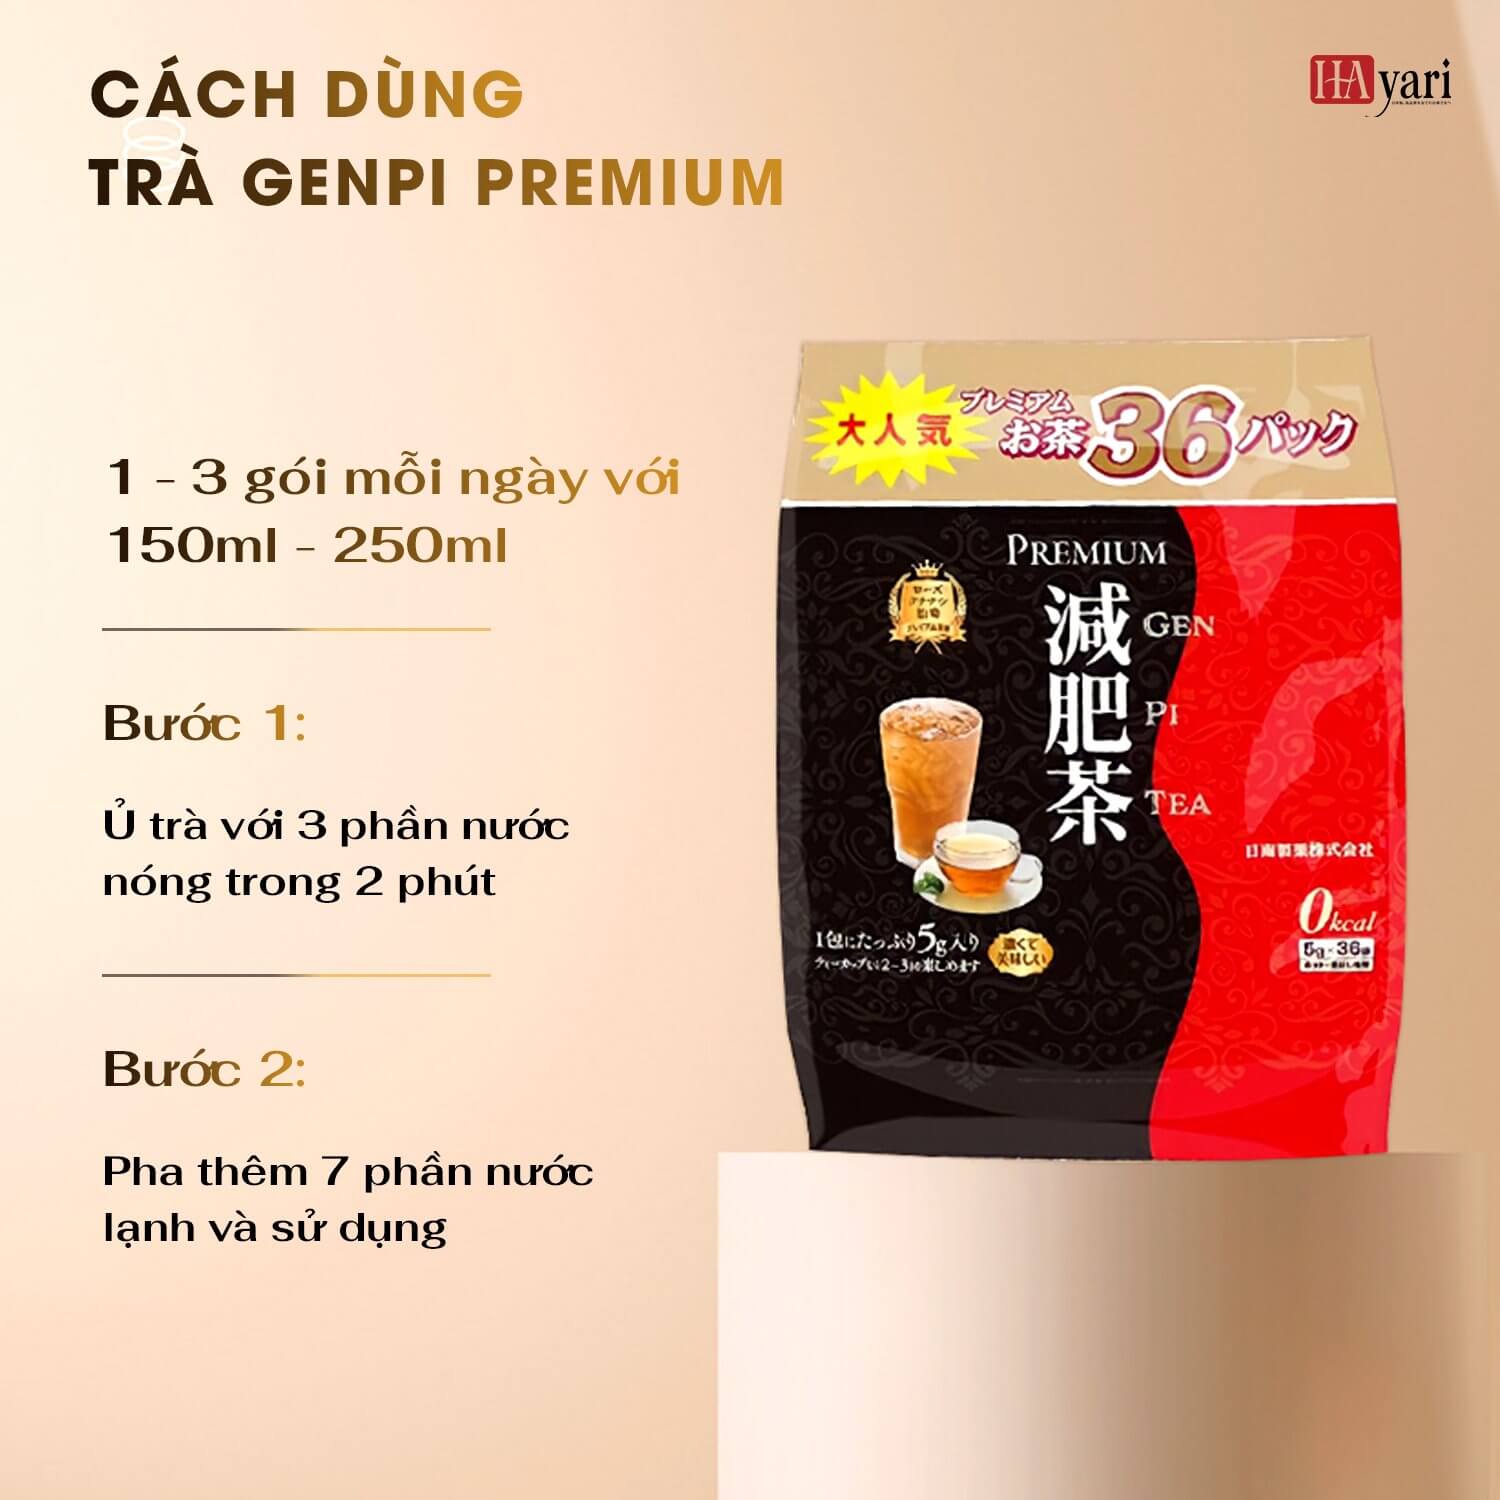 Cách dùng trà giảm cân thải độc Premium Genpi Hayari thaoduockhoe.com